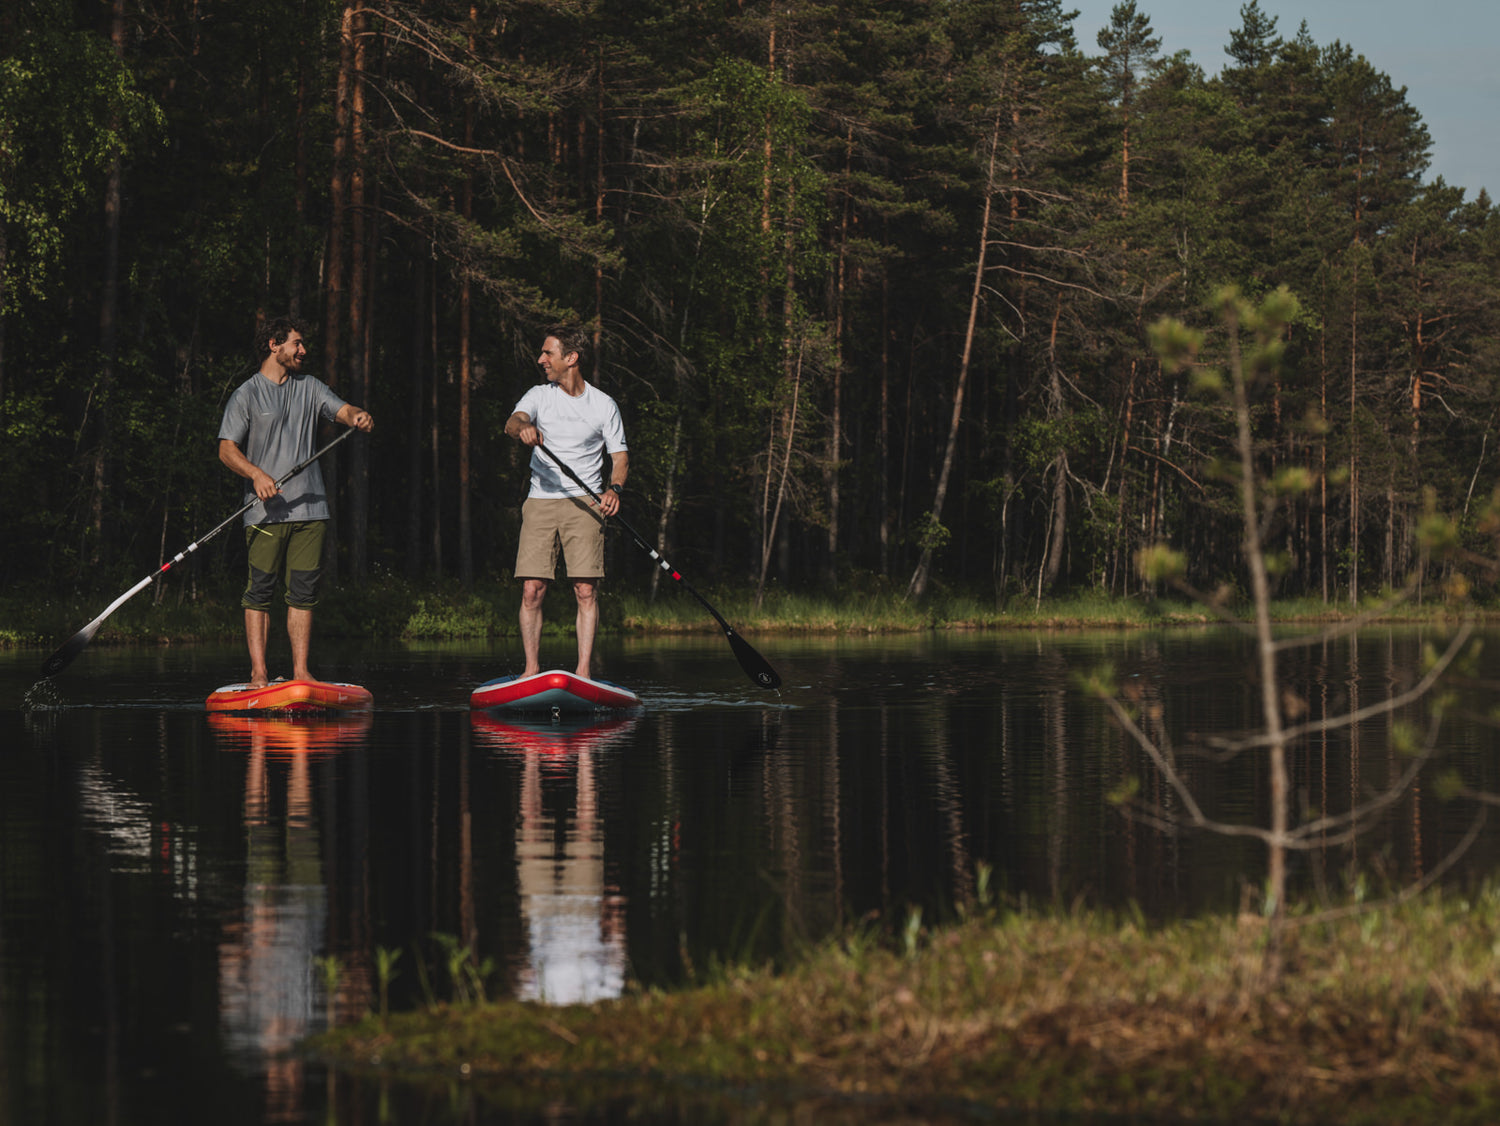 Kai Steimer und Thomas Wendt beim Touren Paddeln auf einem ruhigen finnischen See.